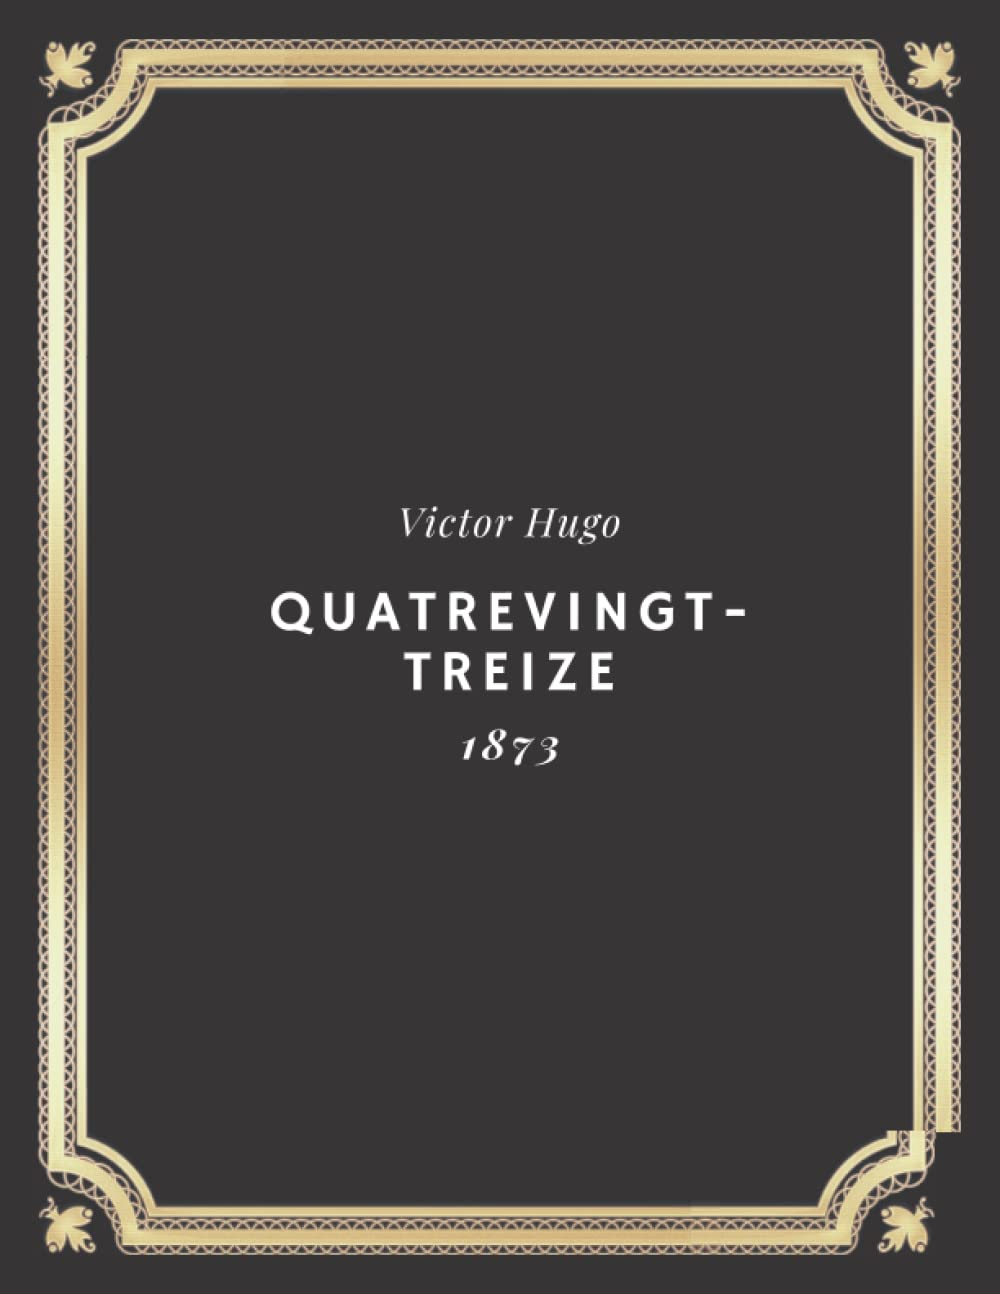 Quatrevingt treize | Victor Hugo: Texte intégral (Annoté d'une biographie)